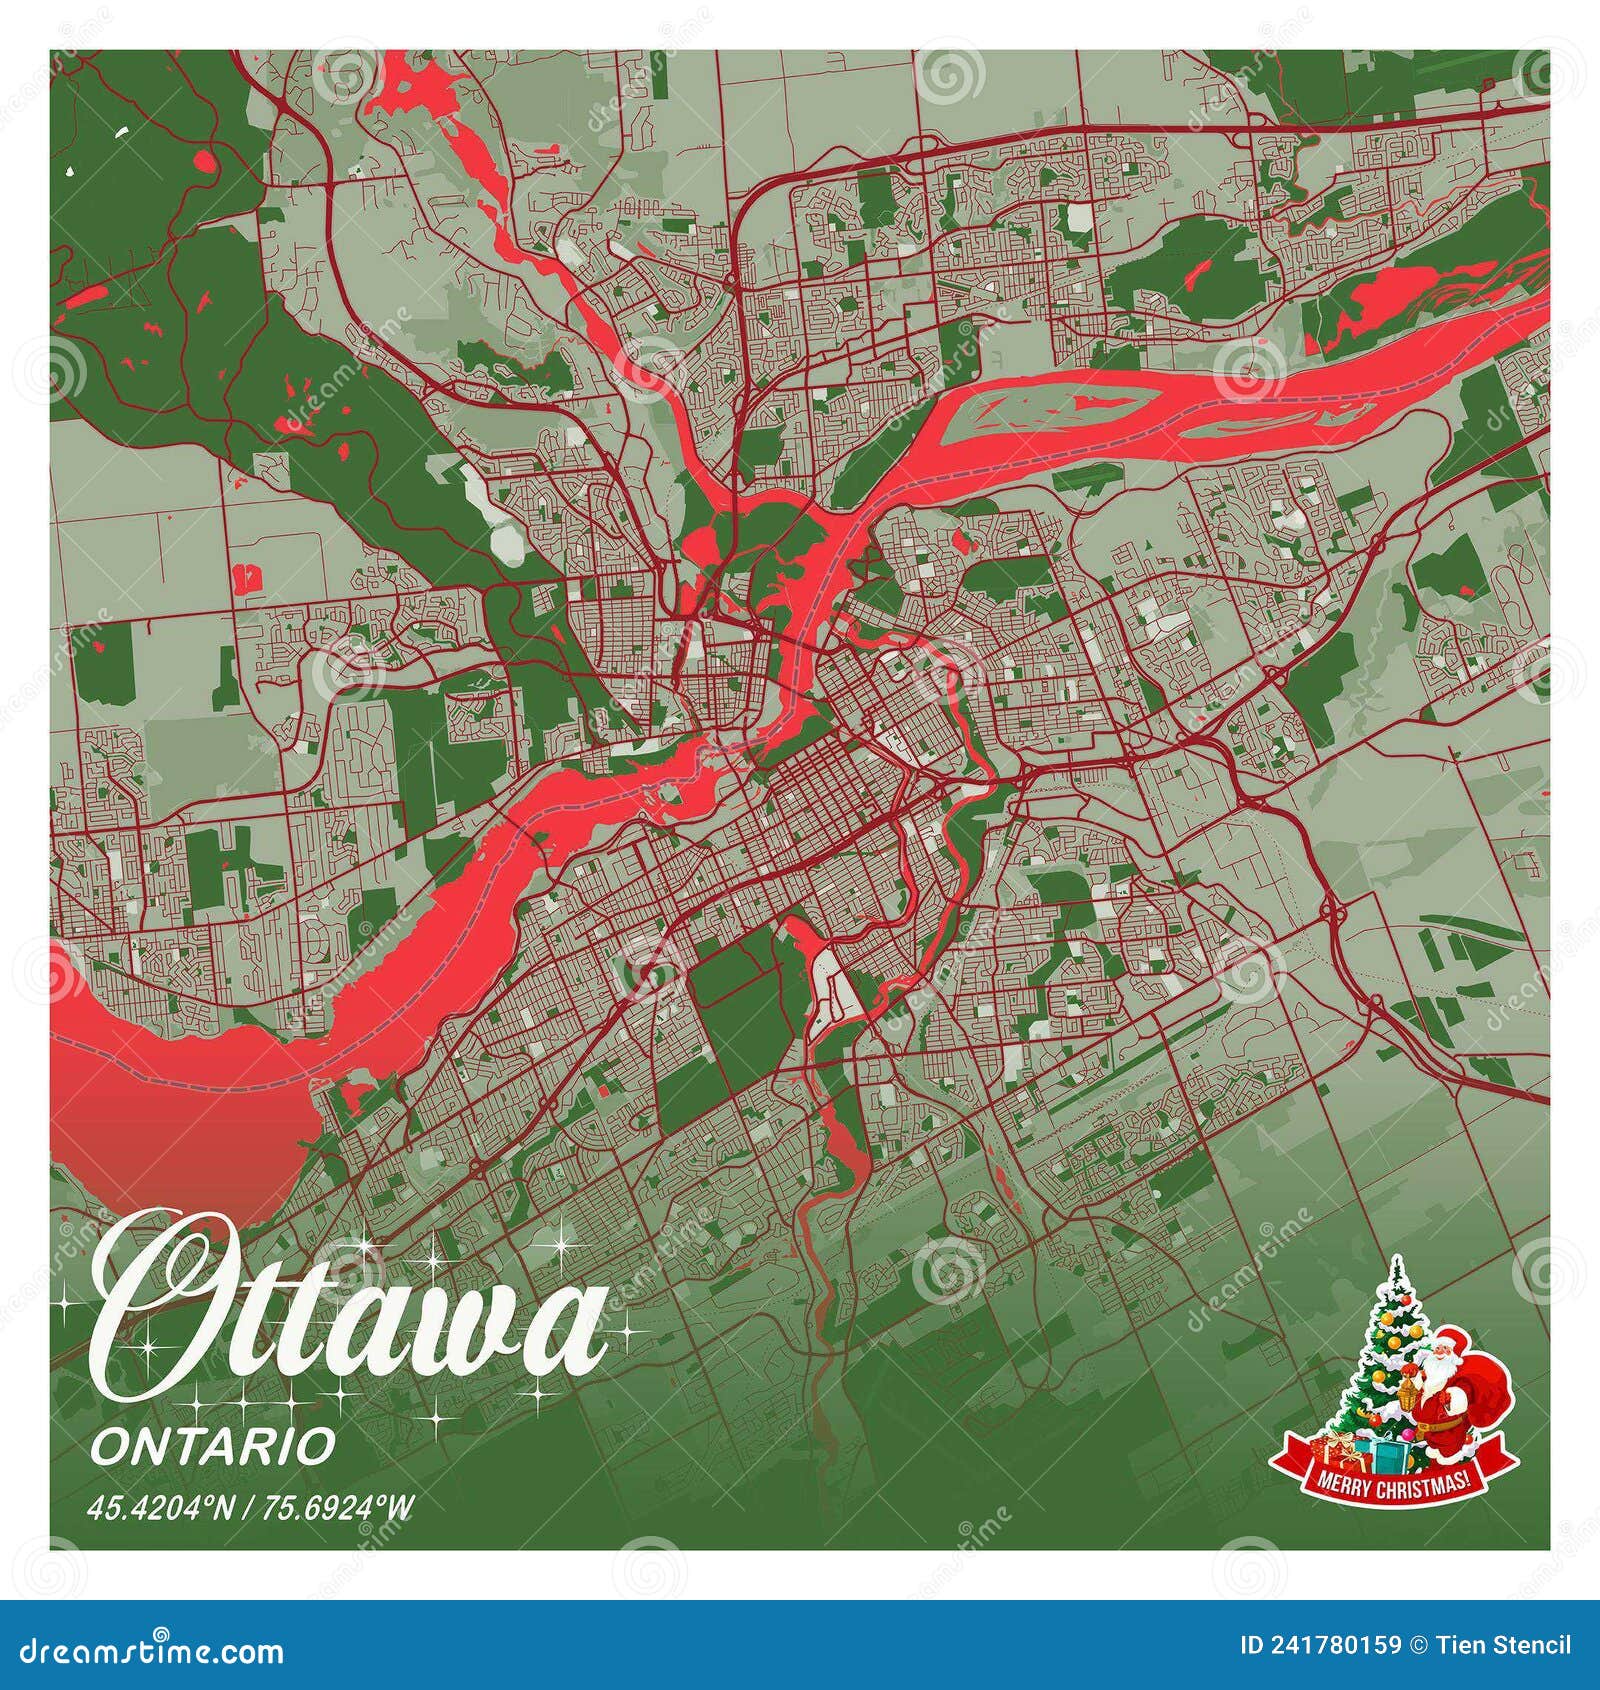 渥太华市中心地图 - 加拿大地图 - 地理教师网